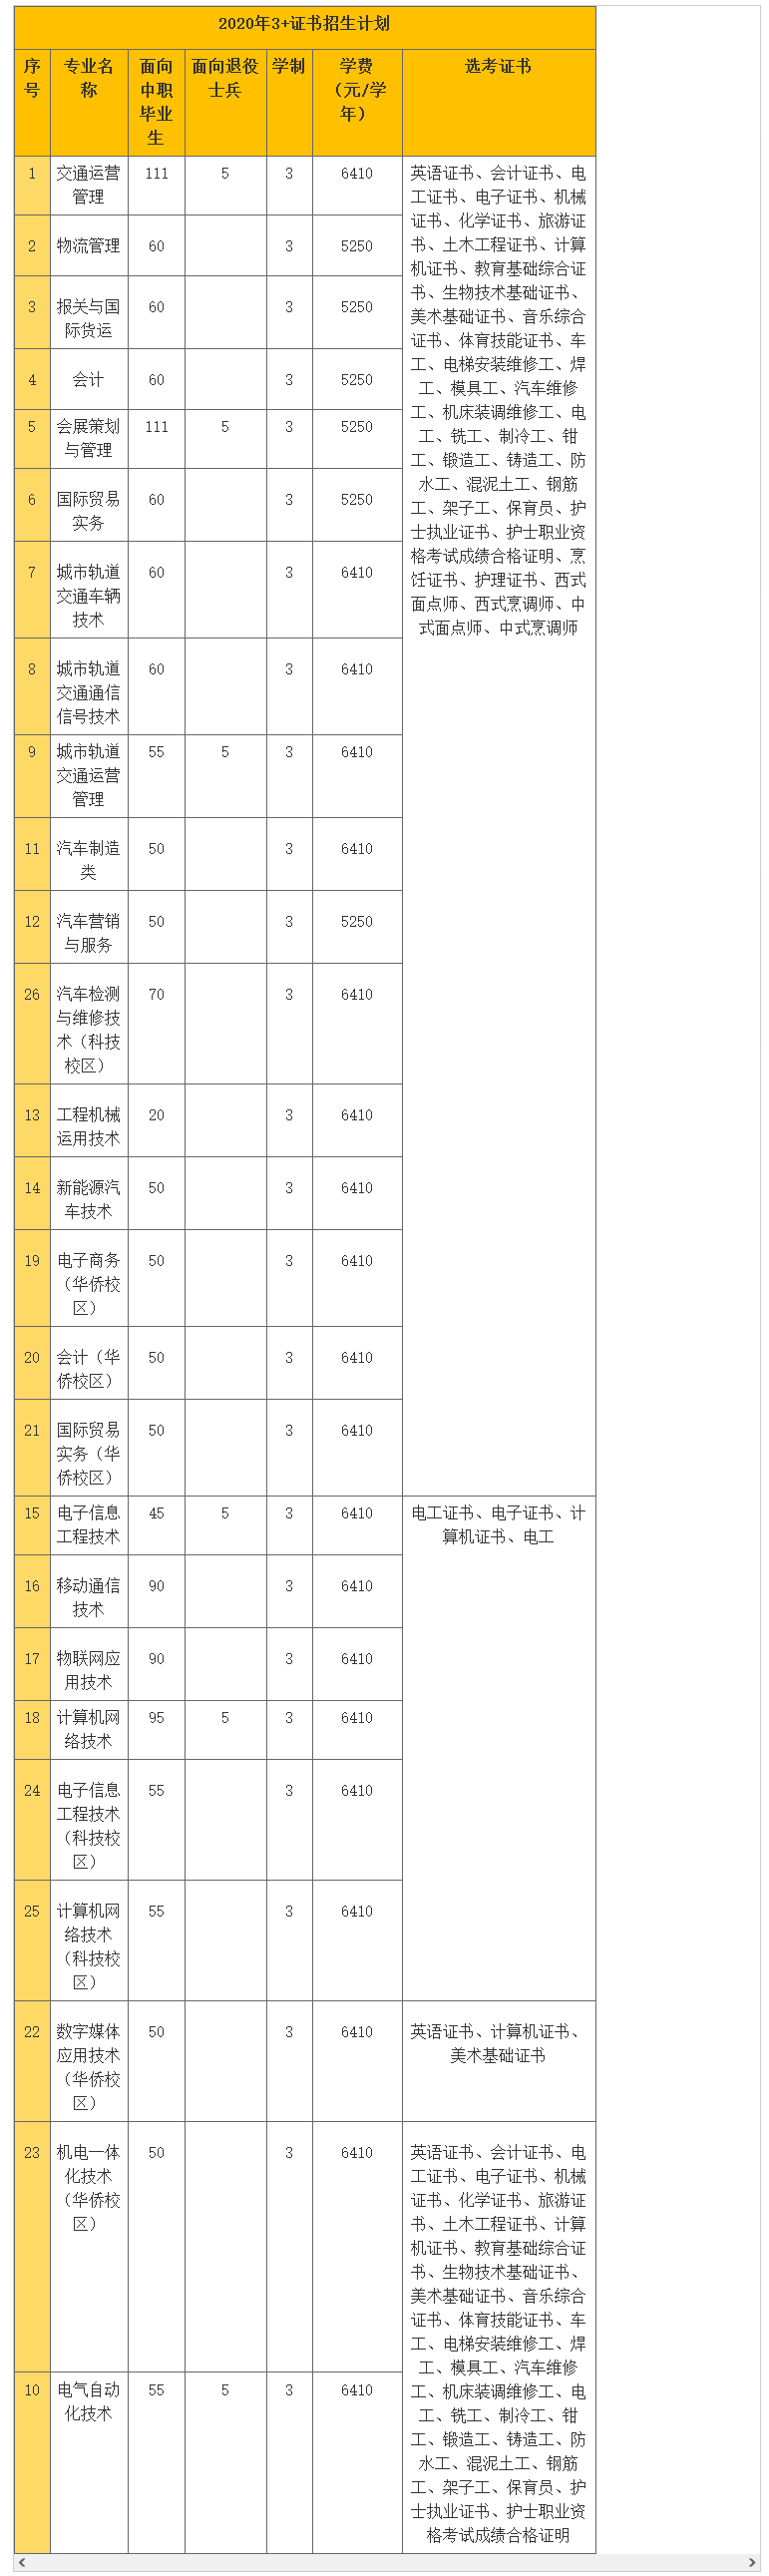 2020年广东交通职业技术学院3+证书(高职高考)招生计划